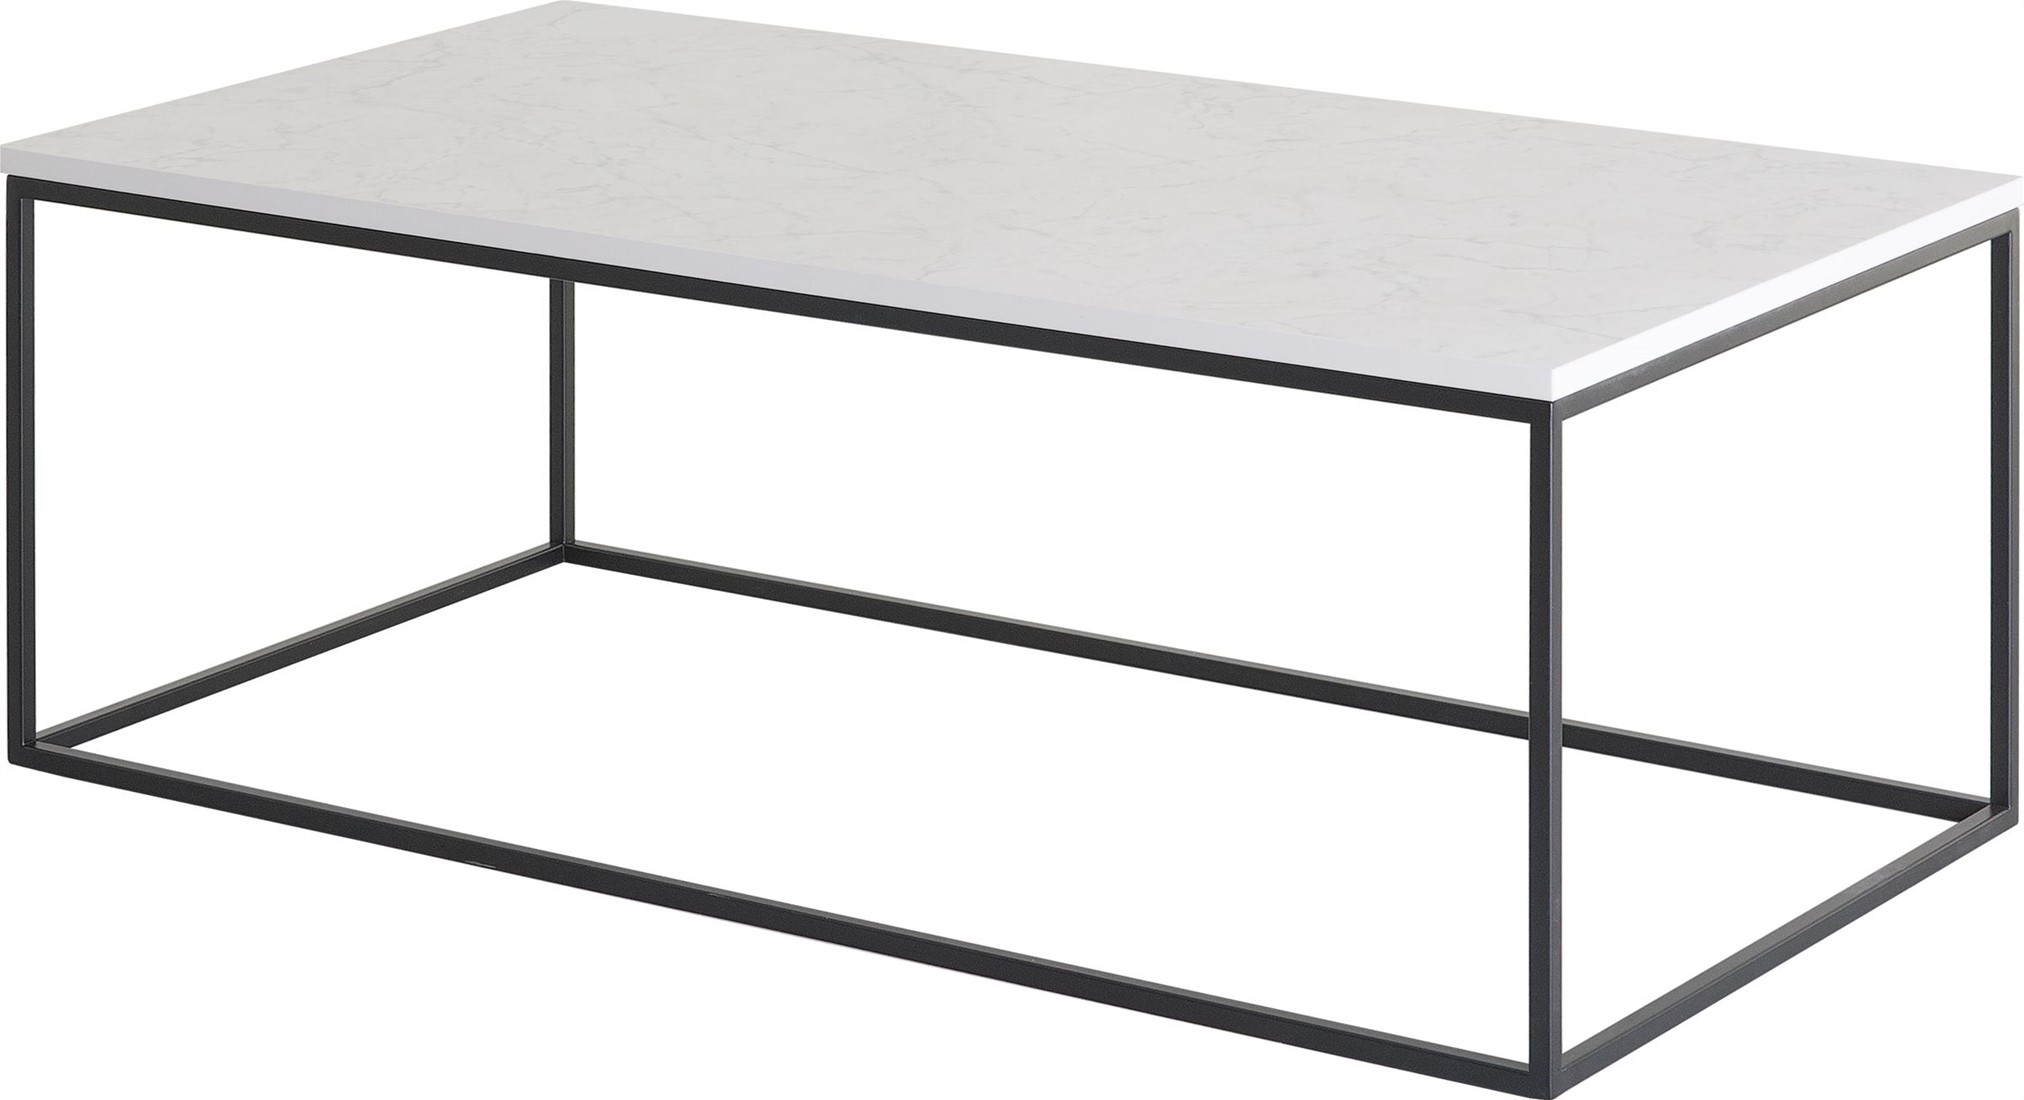 Mail hoofdkussen Afwijzen Langwerpige salontafel met minimalistisch frame